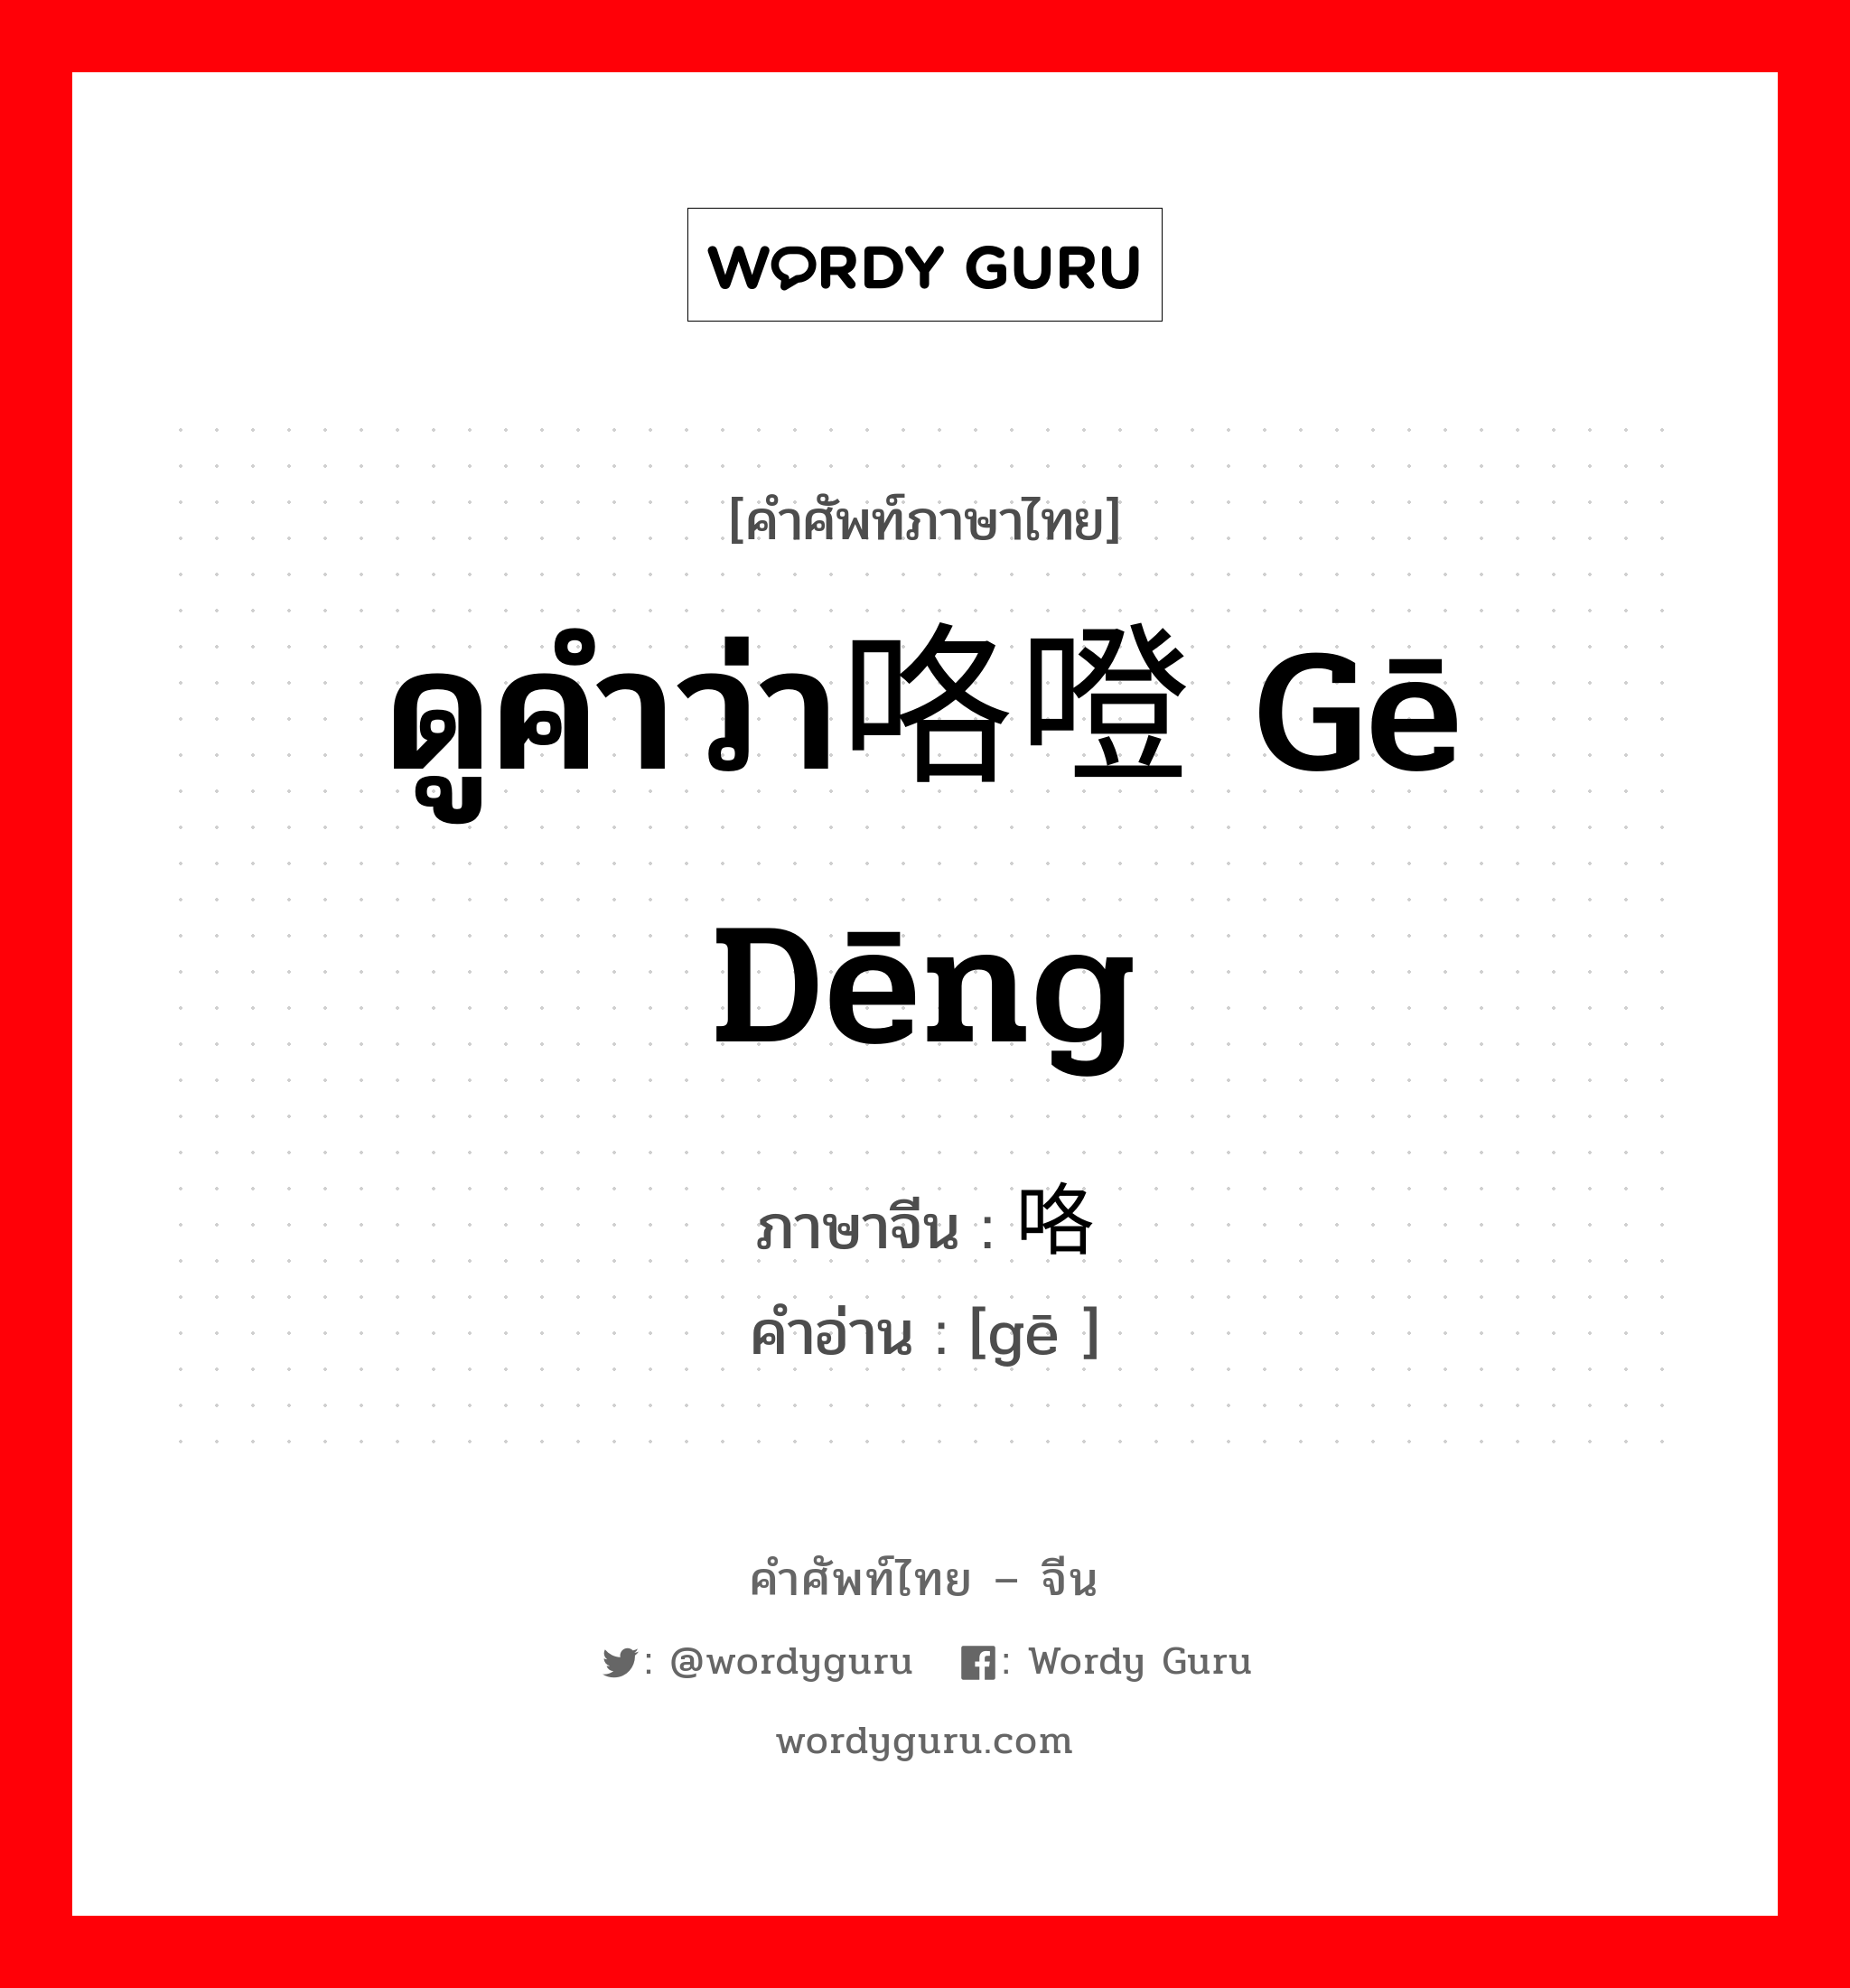 ดูคำว่า咯噔 gē dēng ภาษาจีนคืออะไร, คำศัพท์ภาษาไทย - จีน ดูคำว่า咯噔 gē dēng ภาษาจีน 咯 คำอ่าน [gē ]